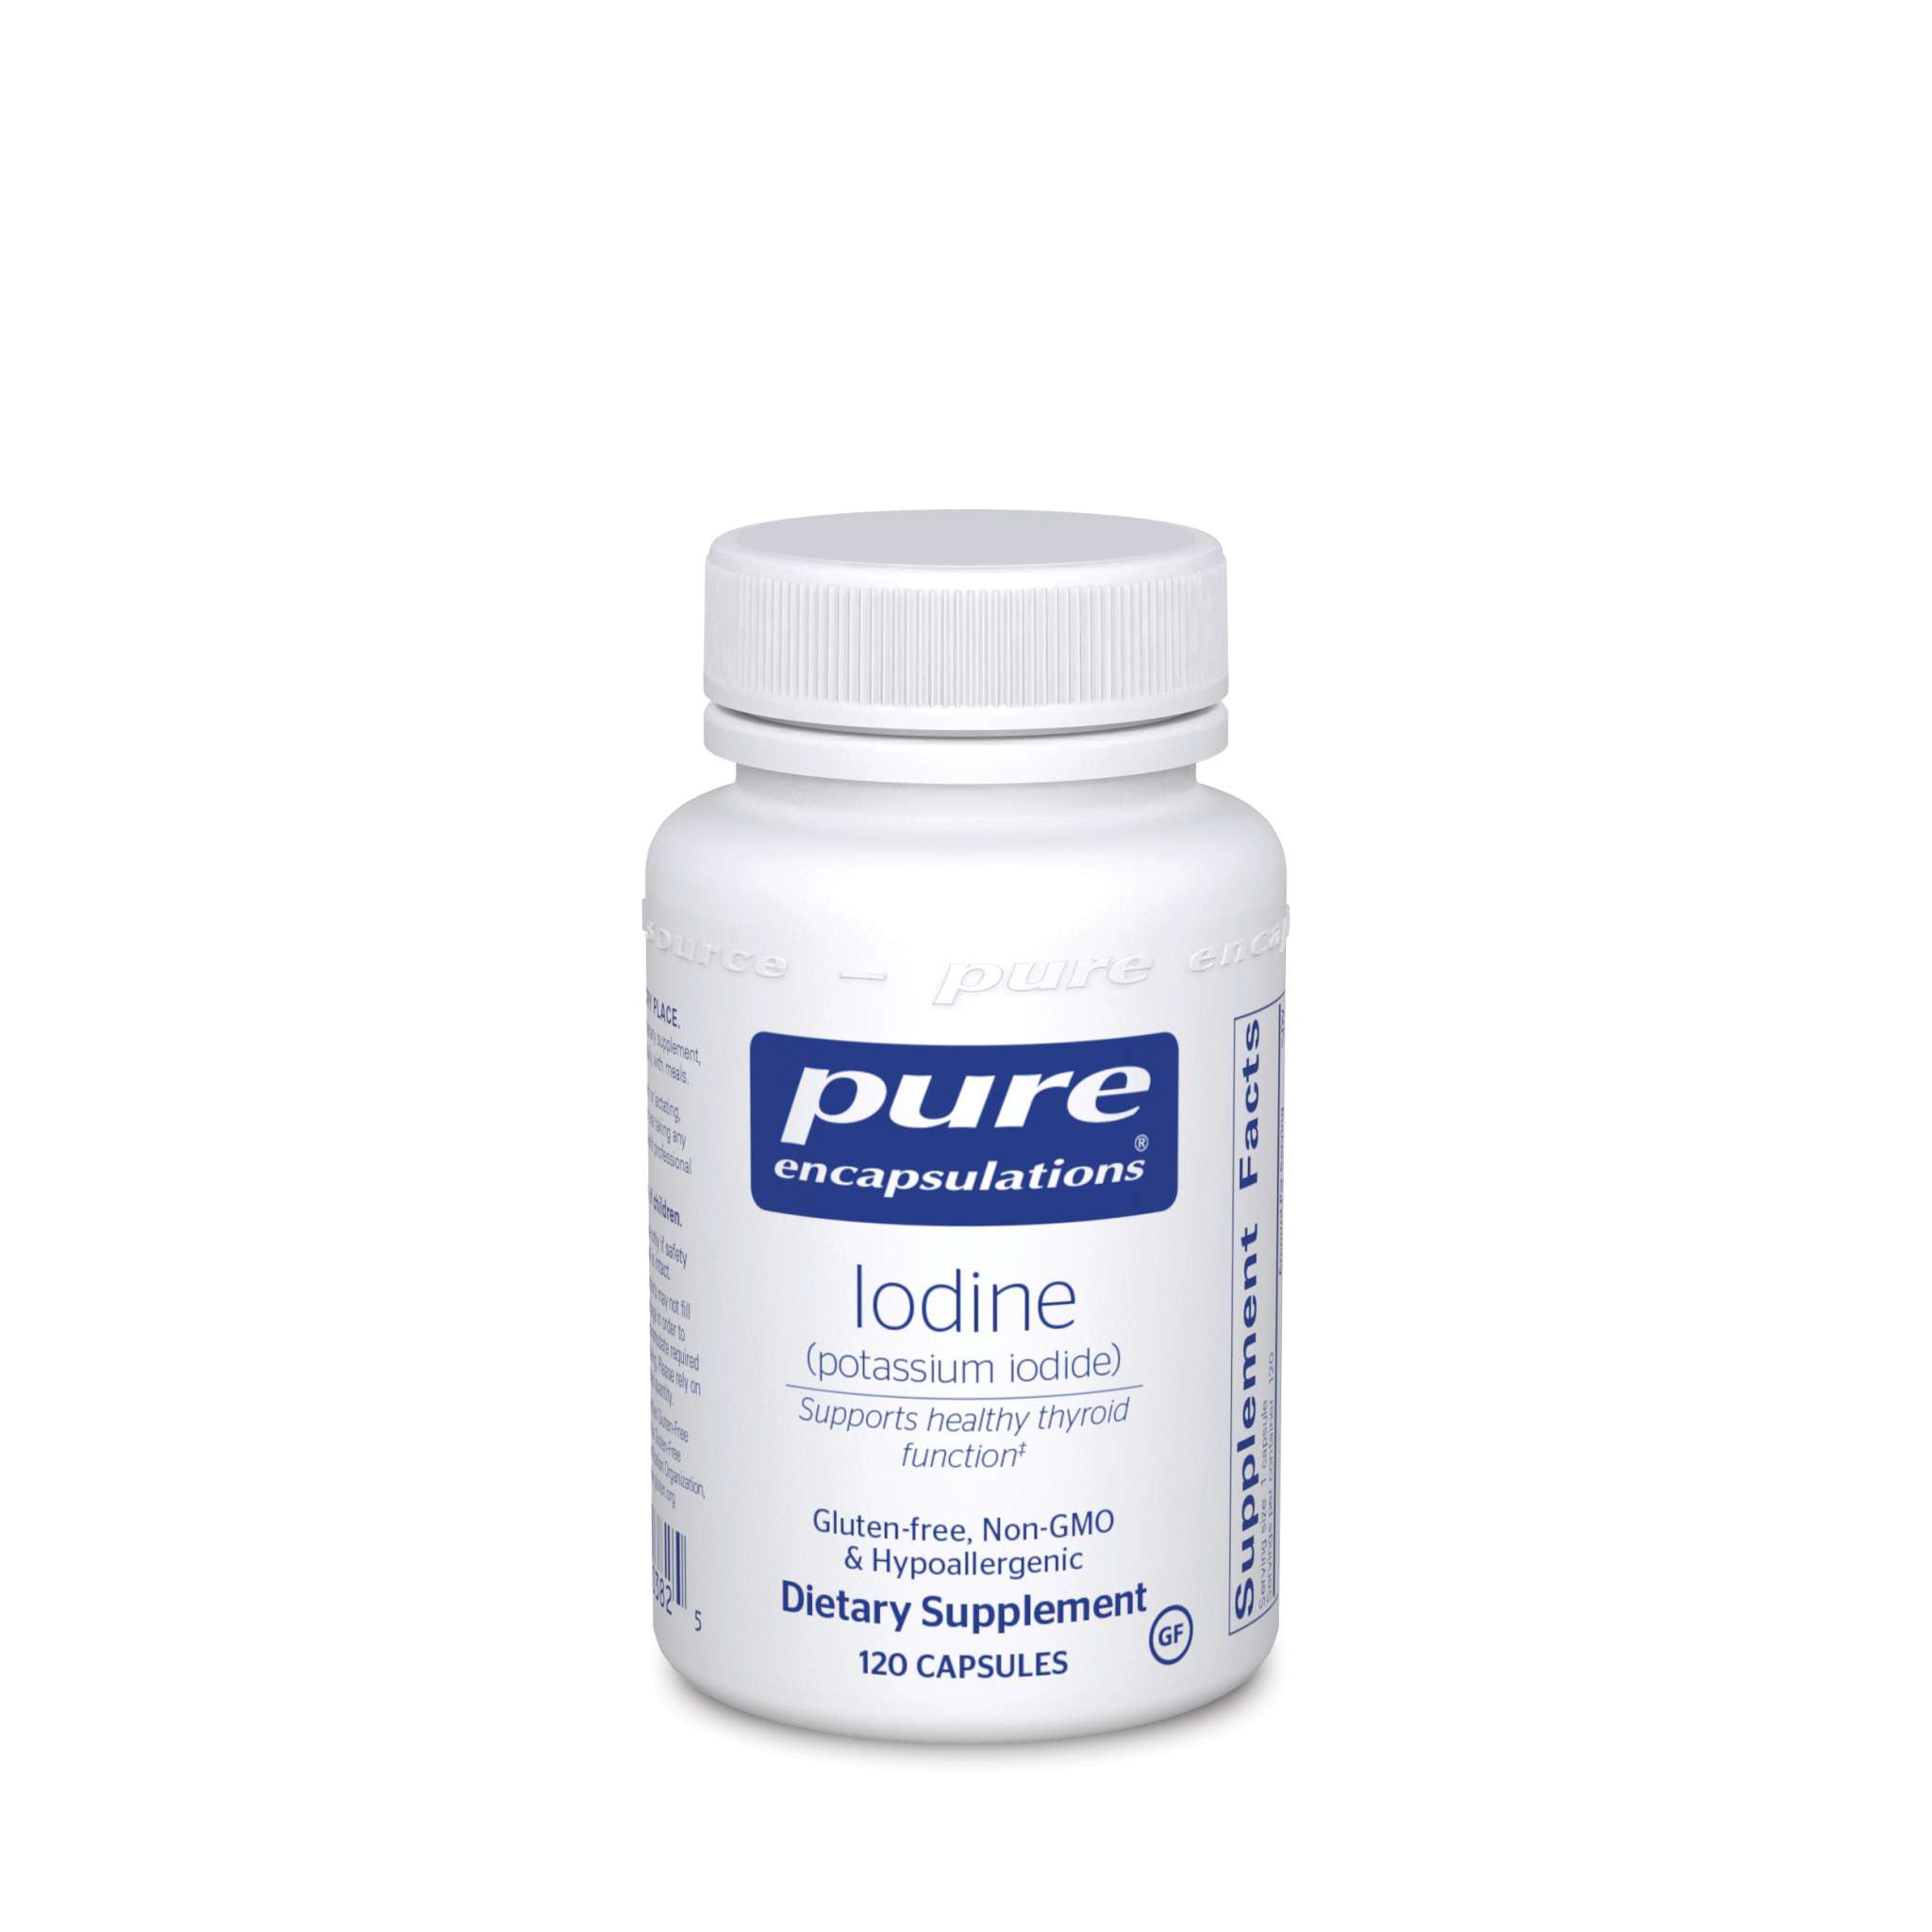 Pure Encapsulations - Iodine 225 mcg (Pot Iodide)